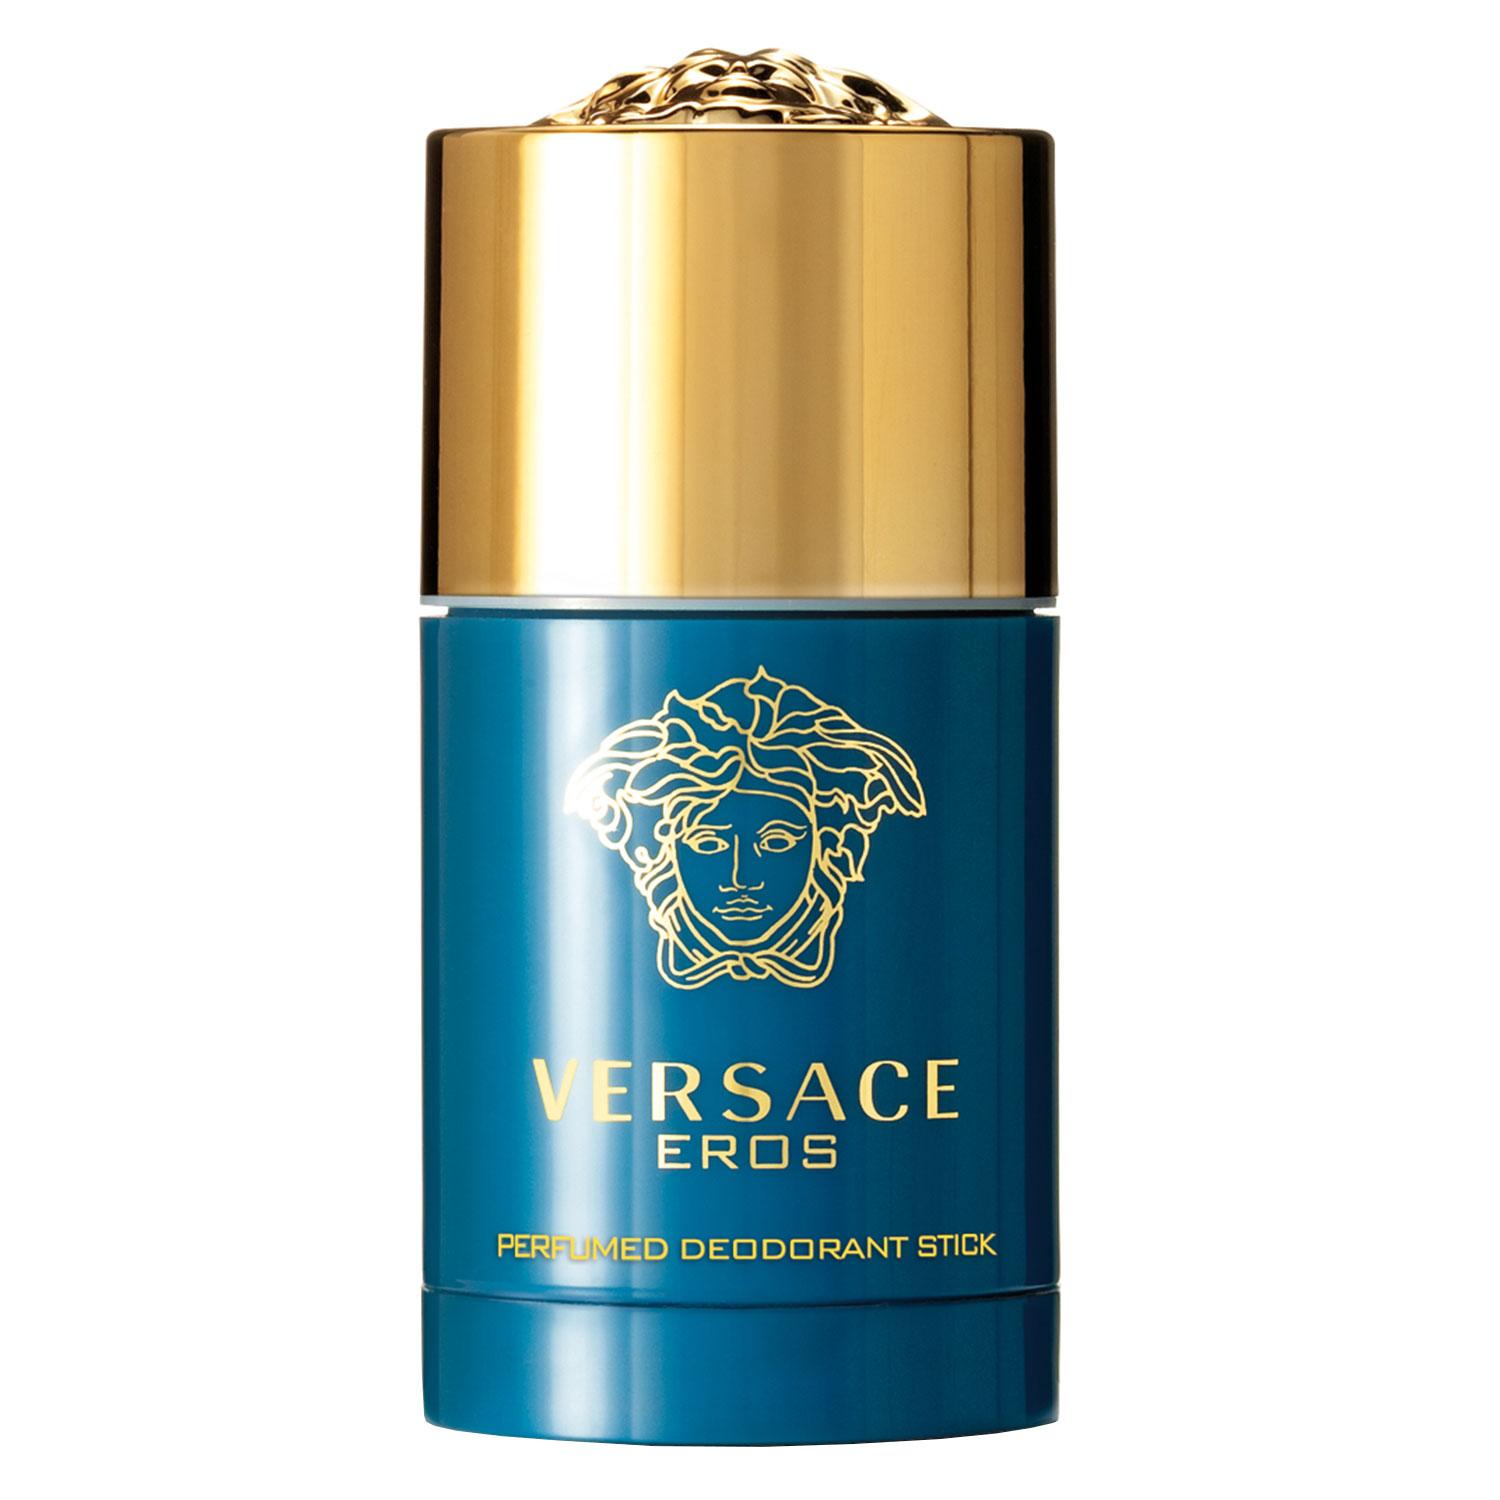 Versace Eros - Deodorant Stick